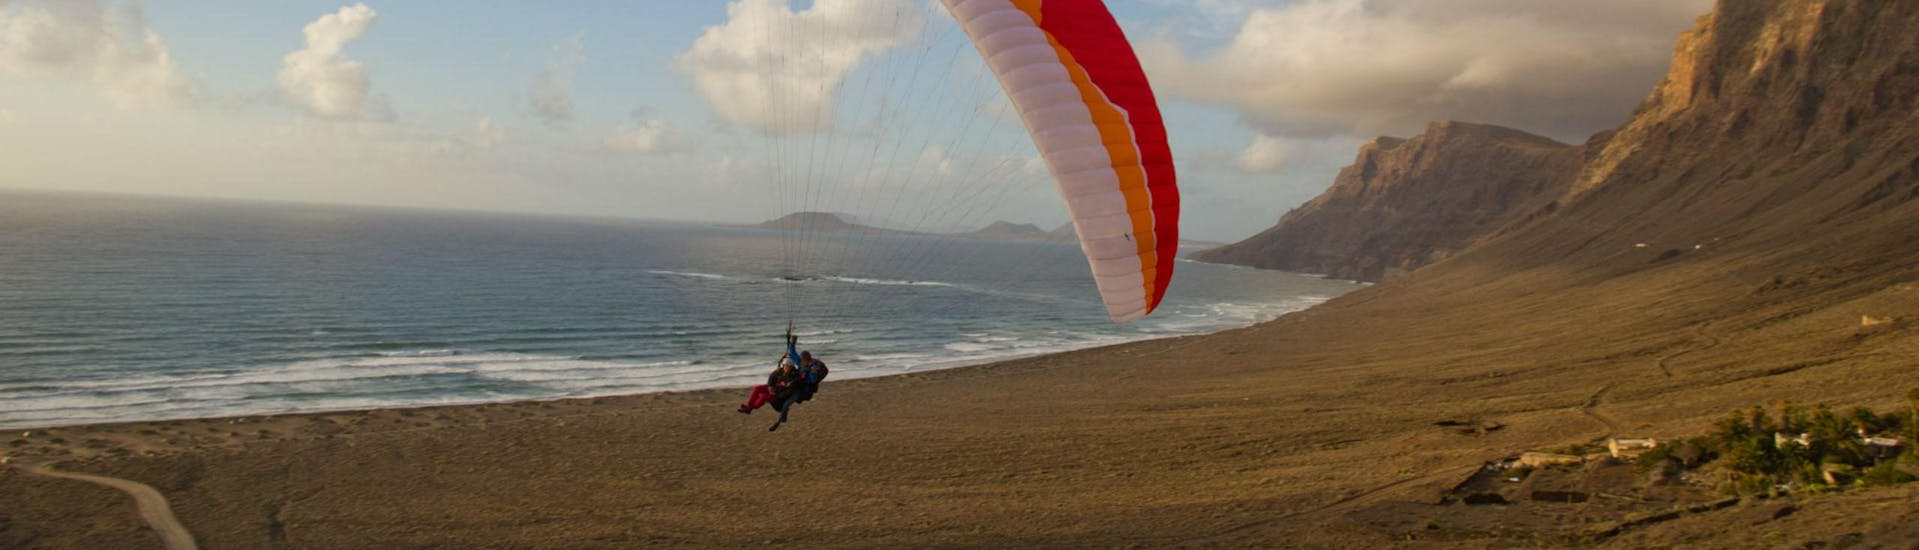 Tandem Paragliding in Lanzarote - Falke.